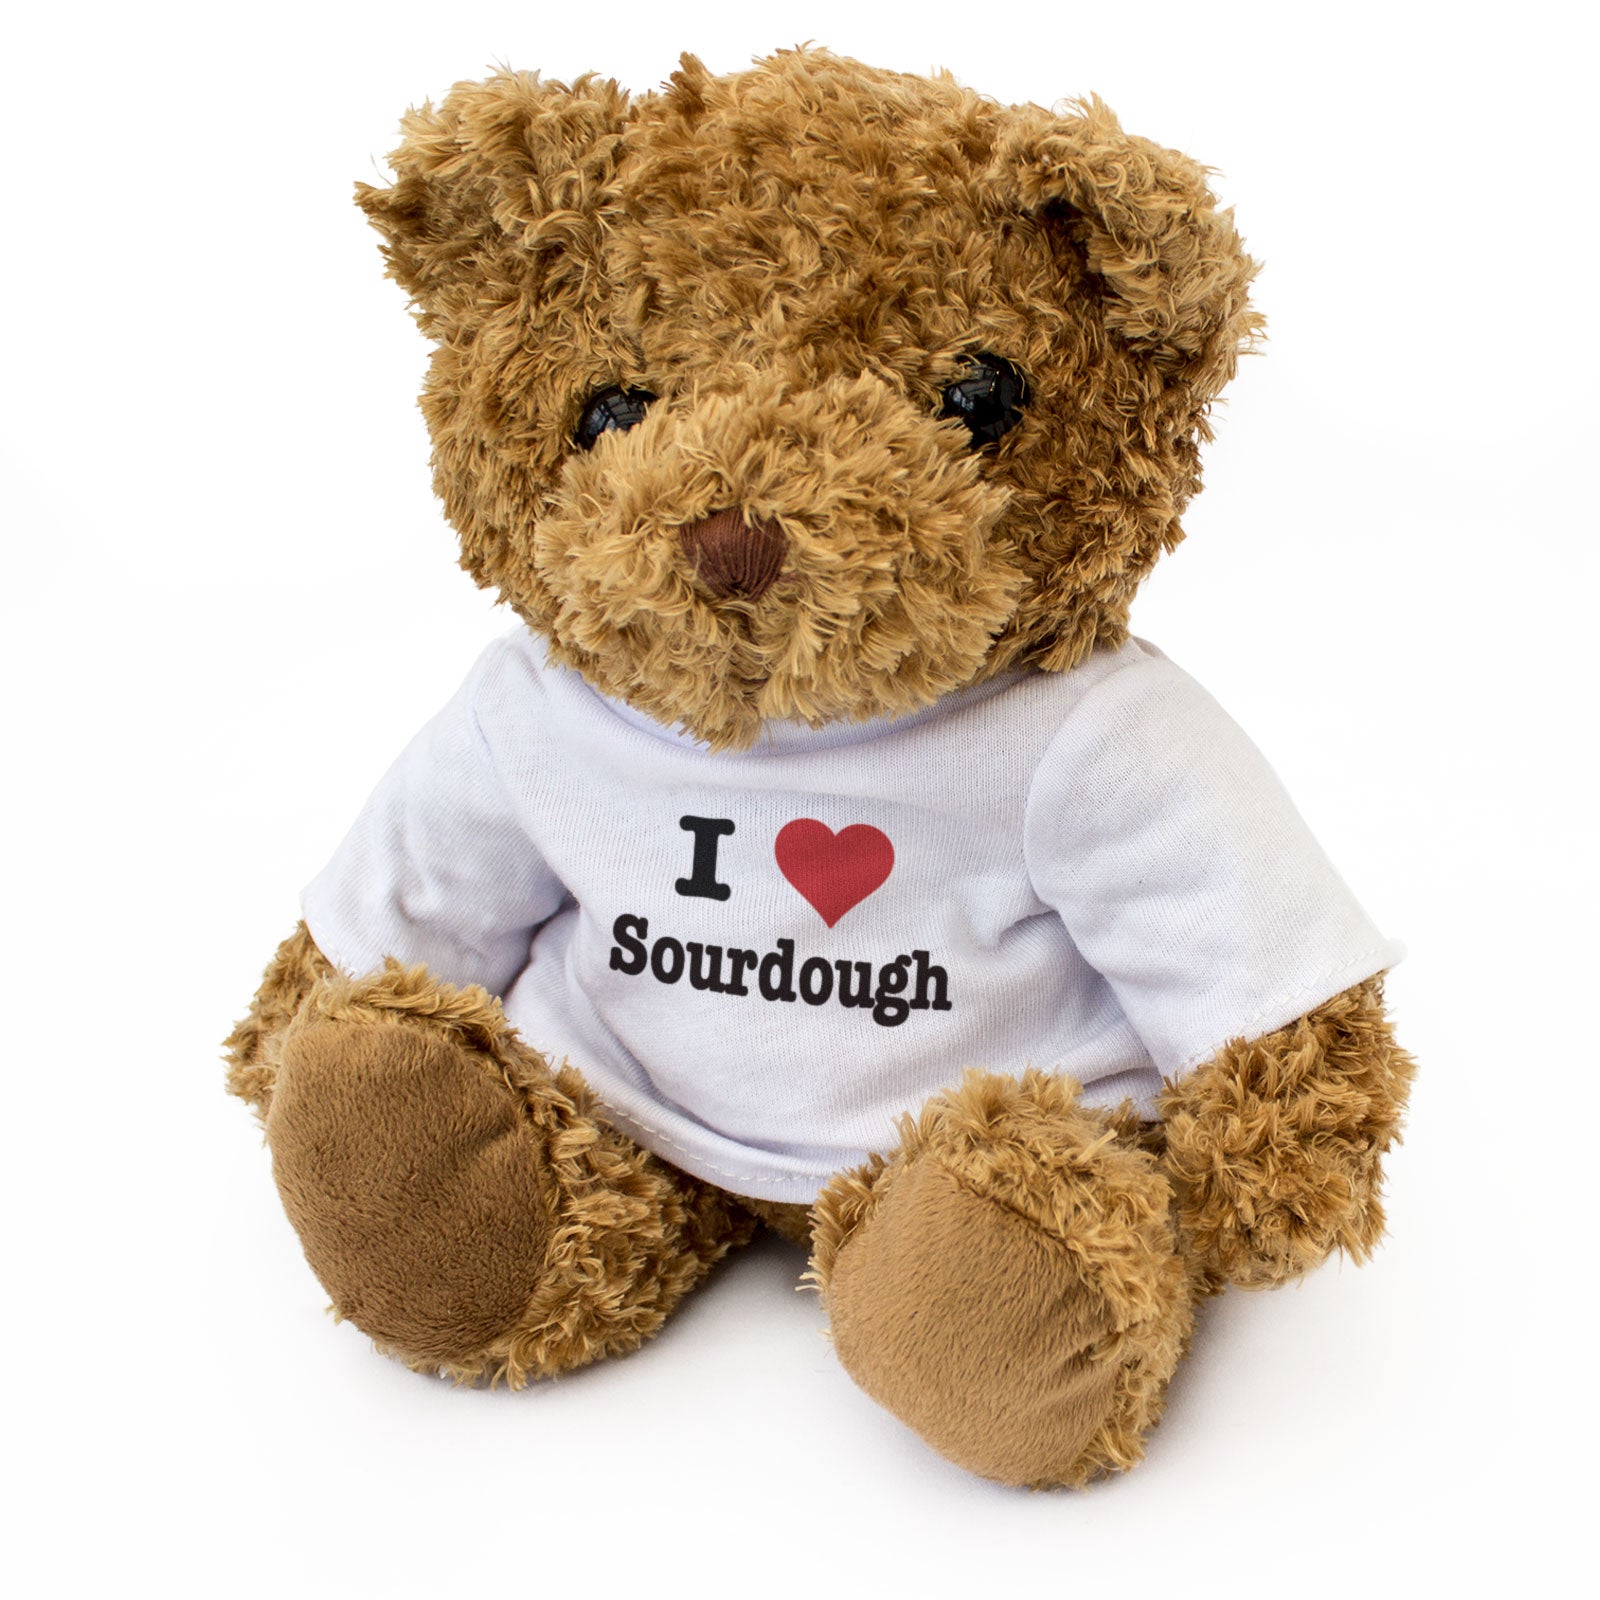 I Love Sourdough - Teddy Bear